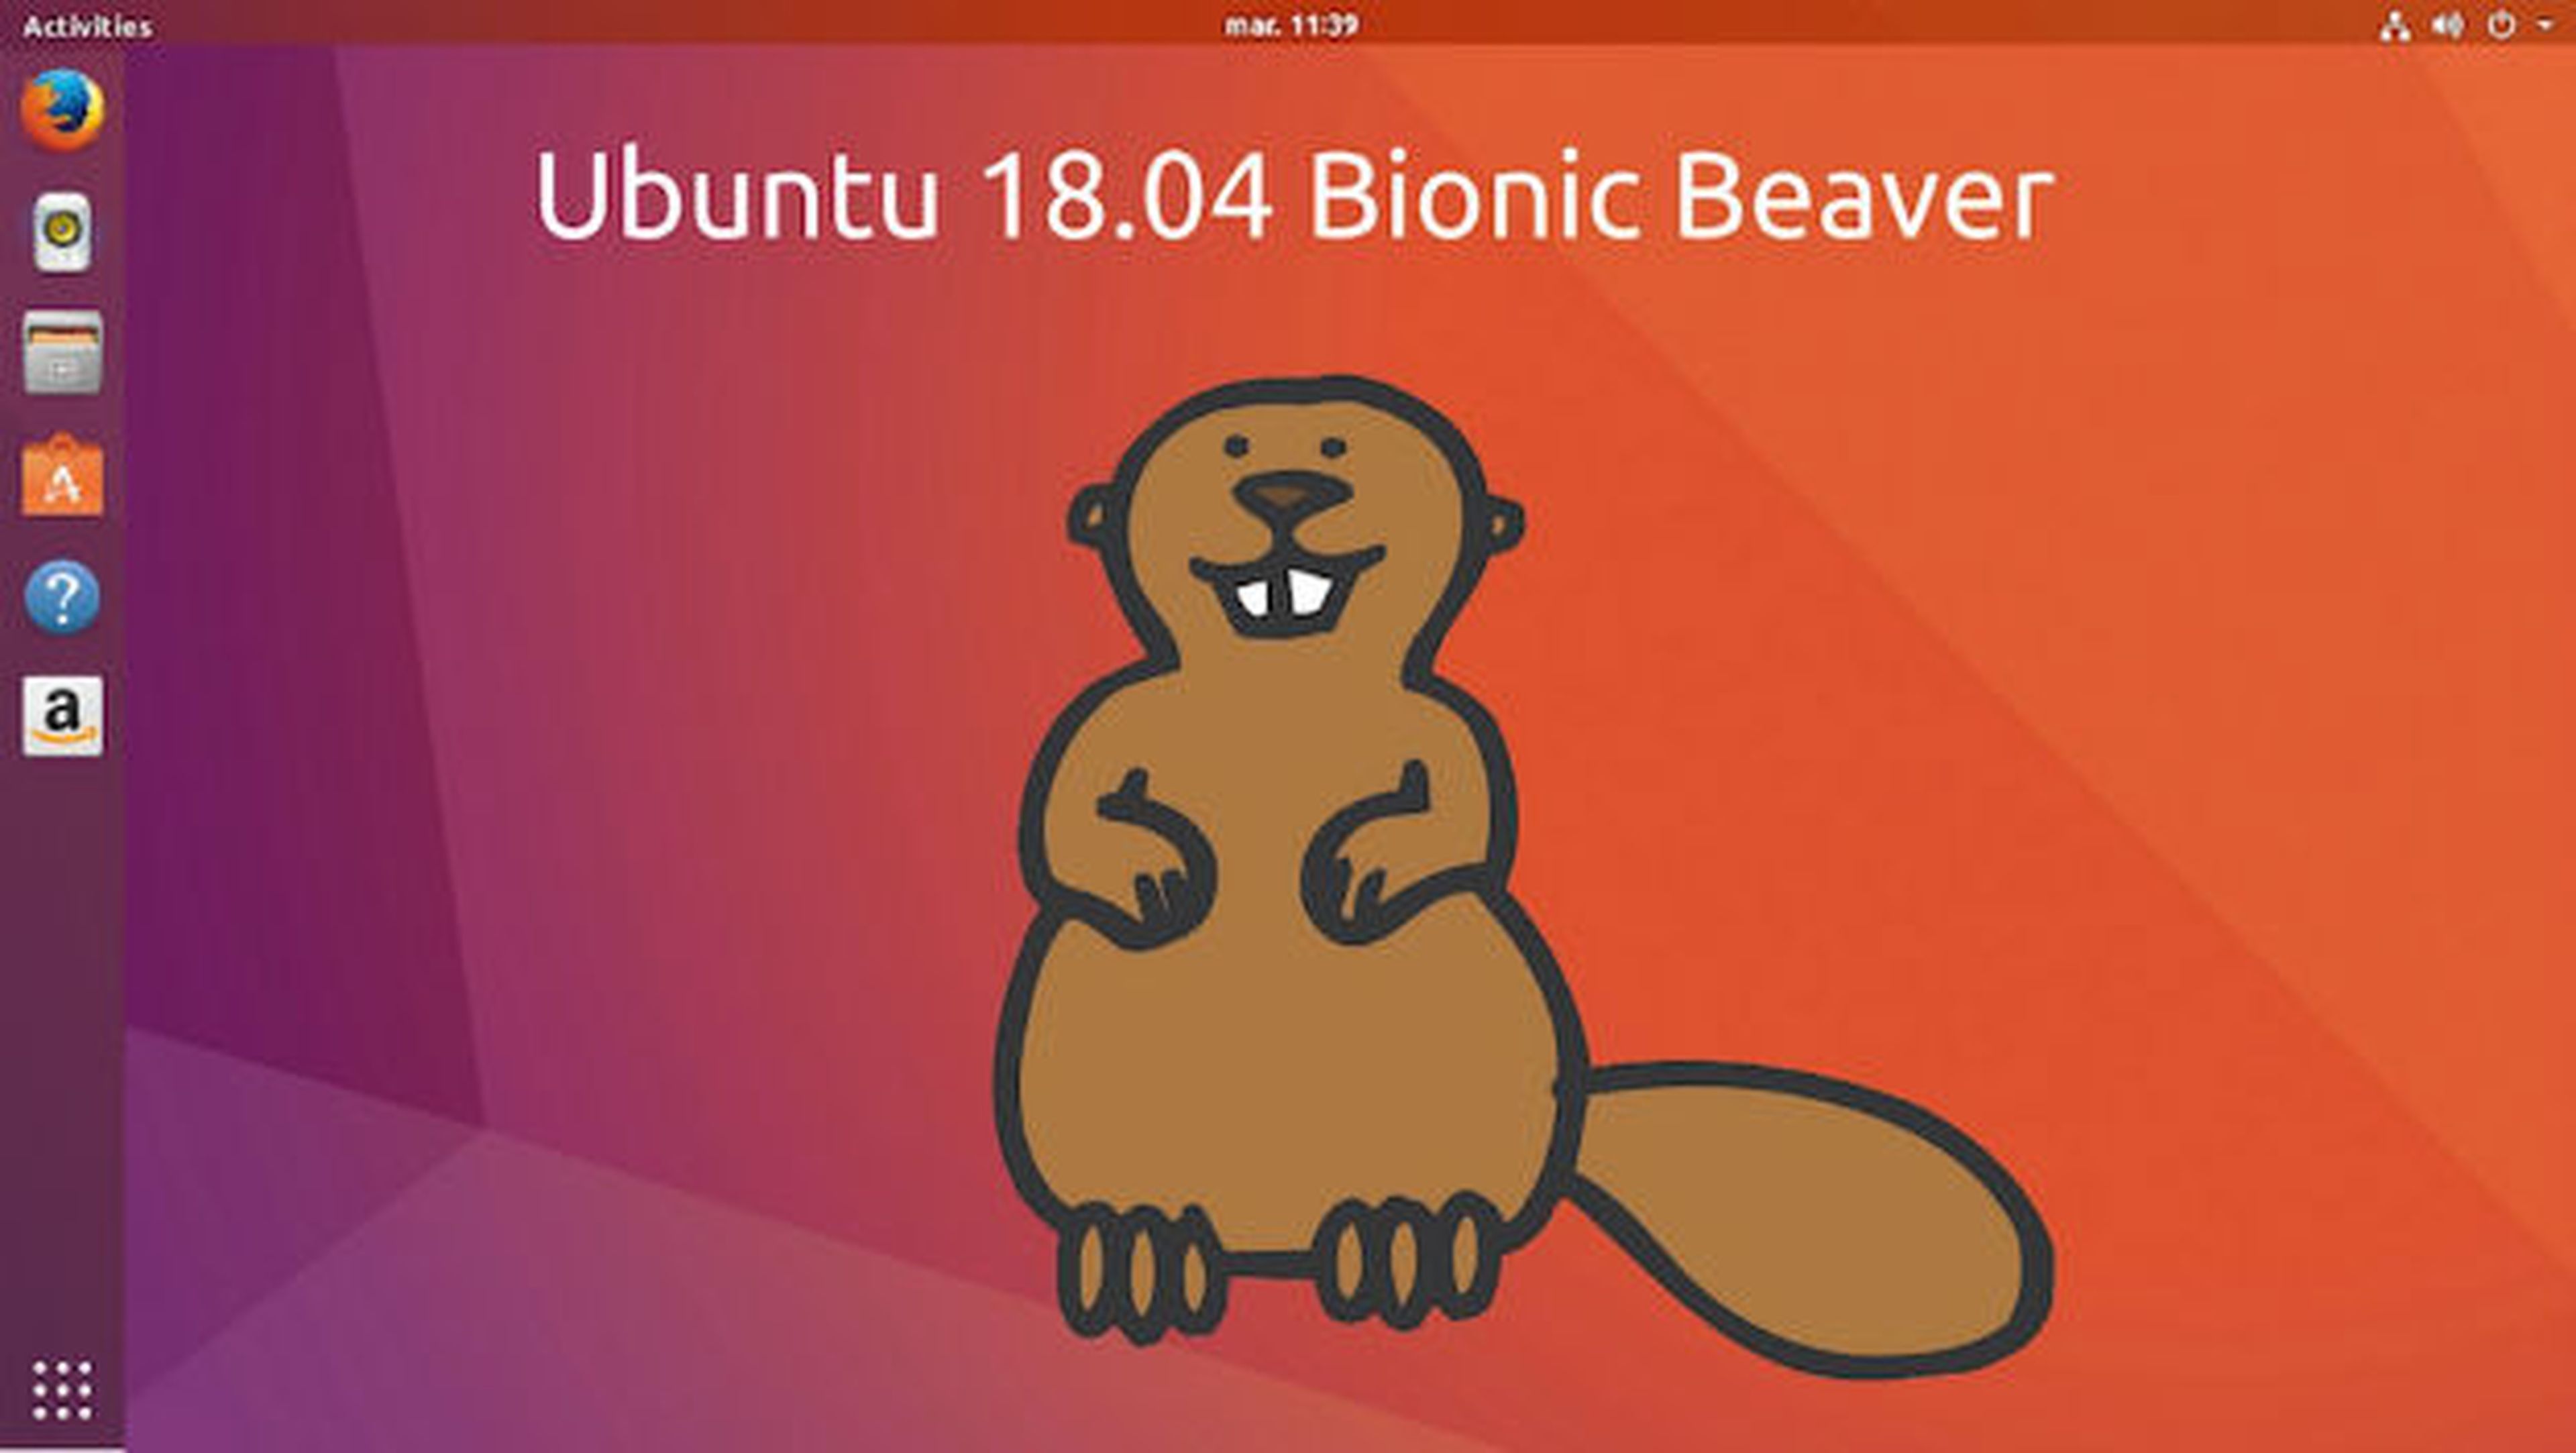 Ya puedes instalar Ubuntu 18.04 Bionic Beaver y probar todas sus novedades.